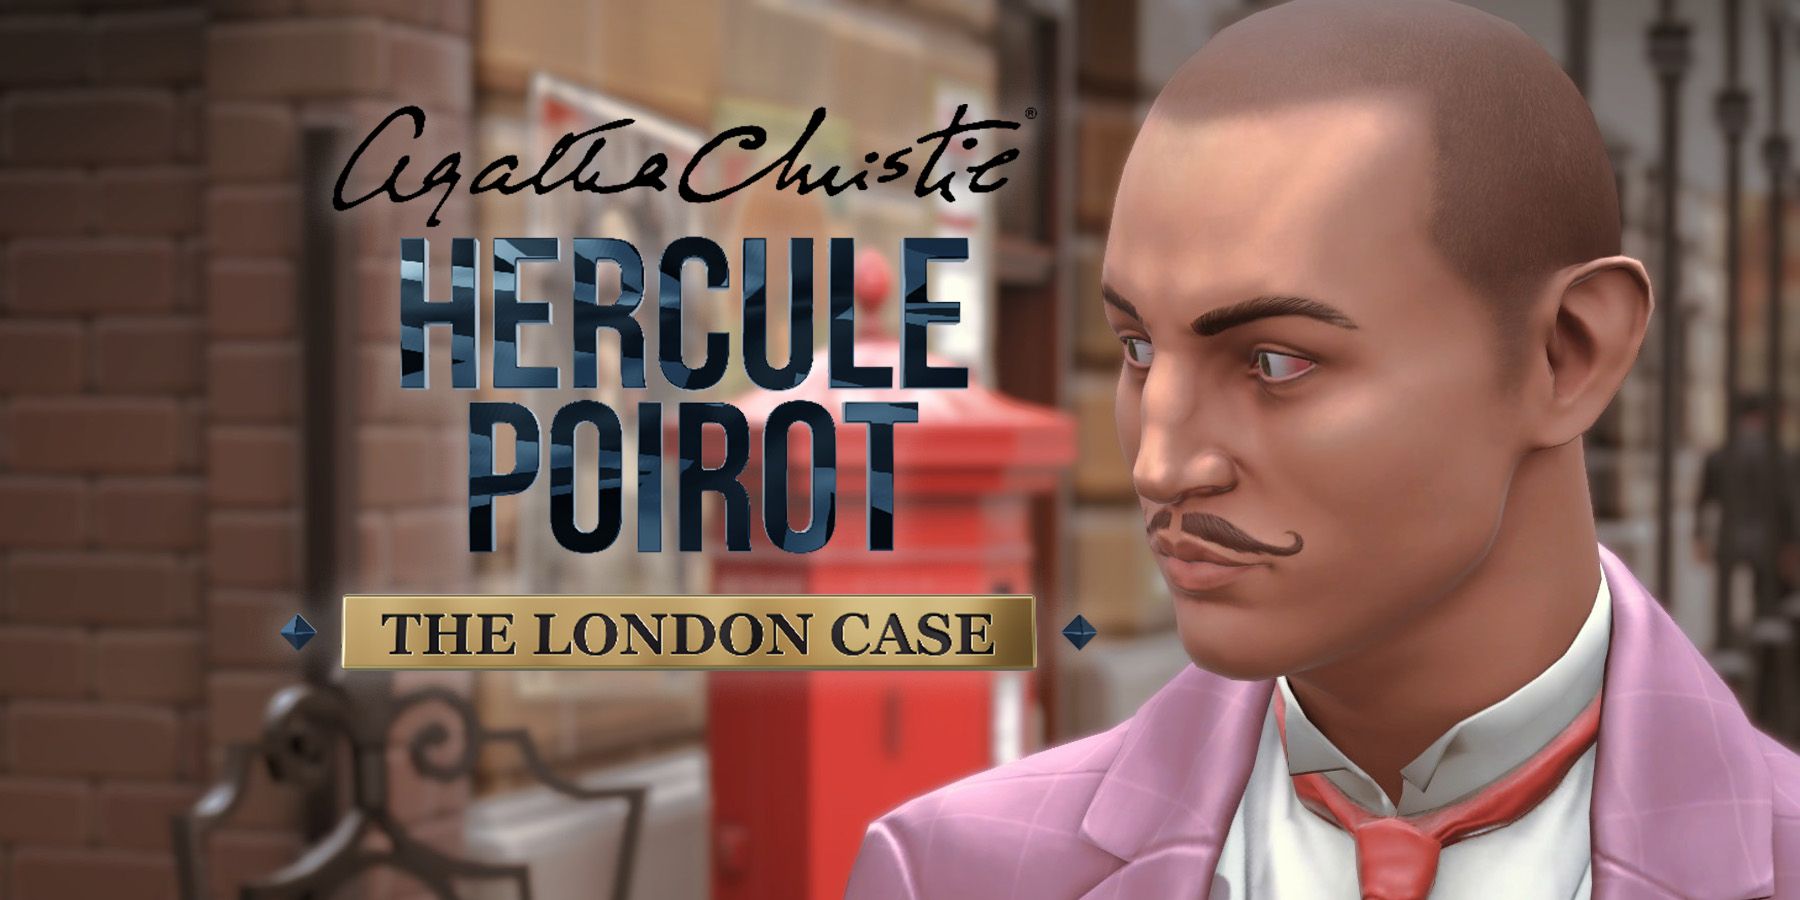 “Estirándose demasiado” – Agatha Christie – Hercule Poirot: The London Case Review